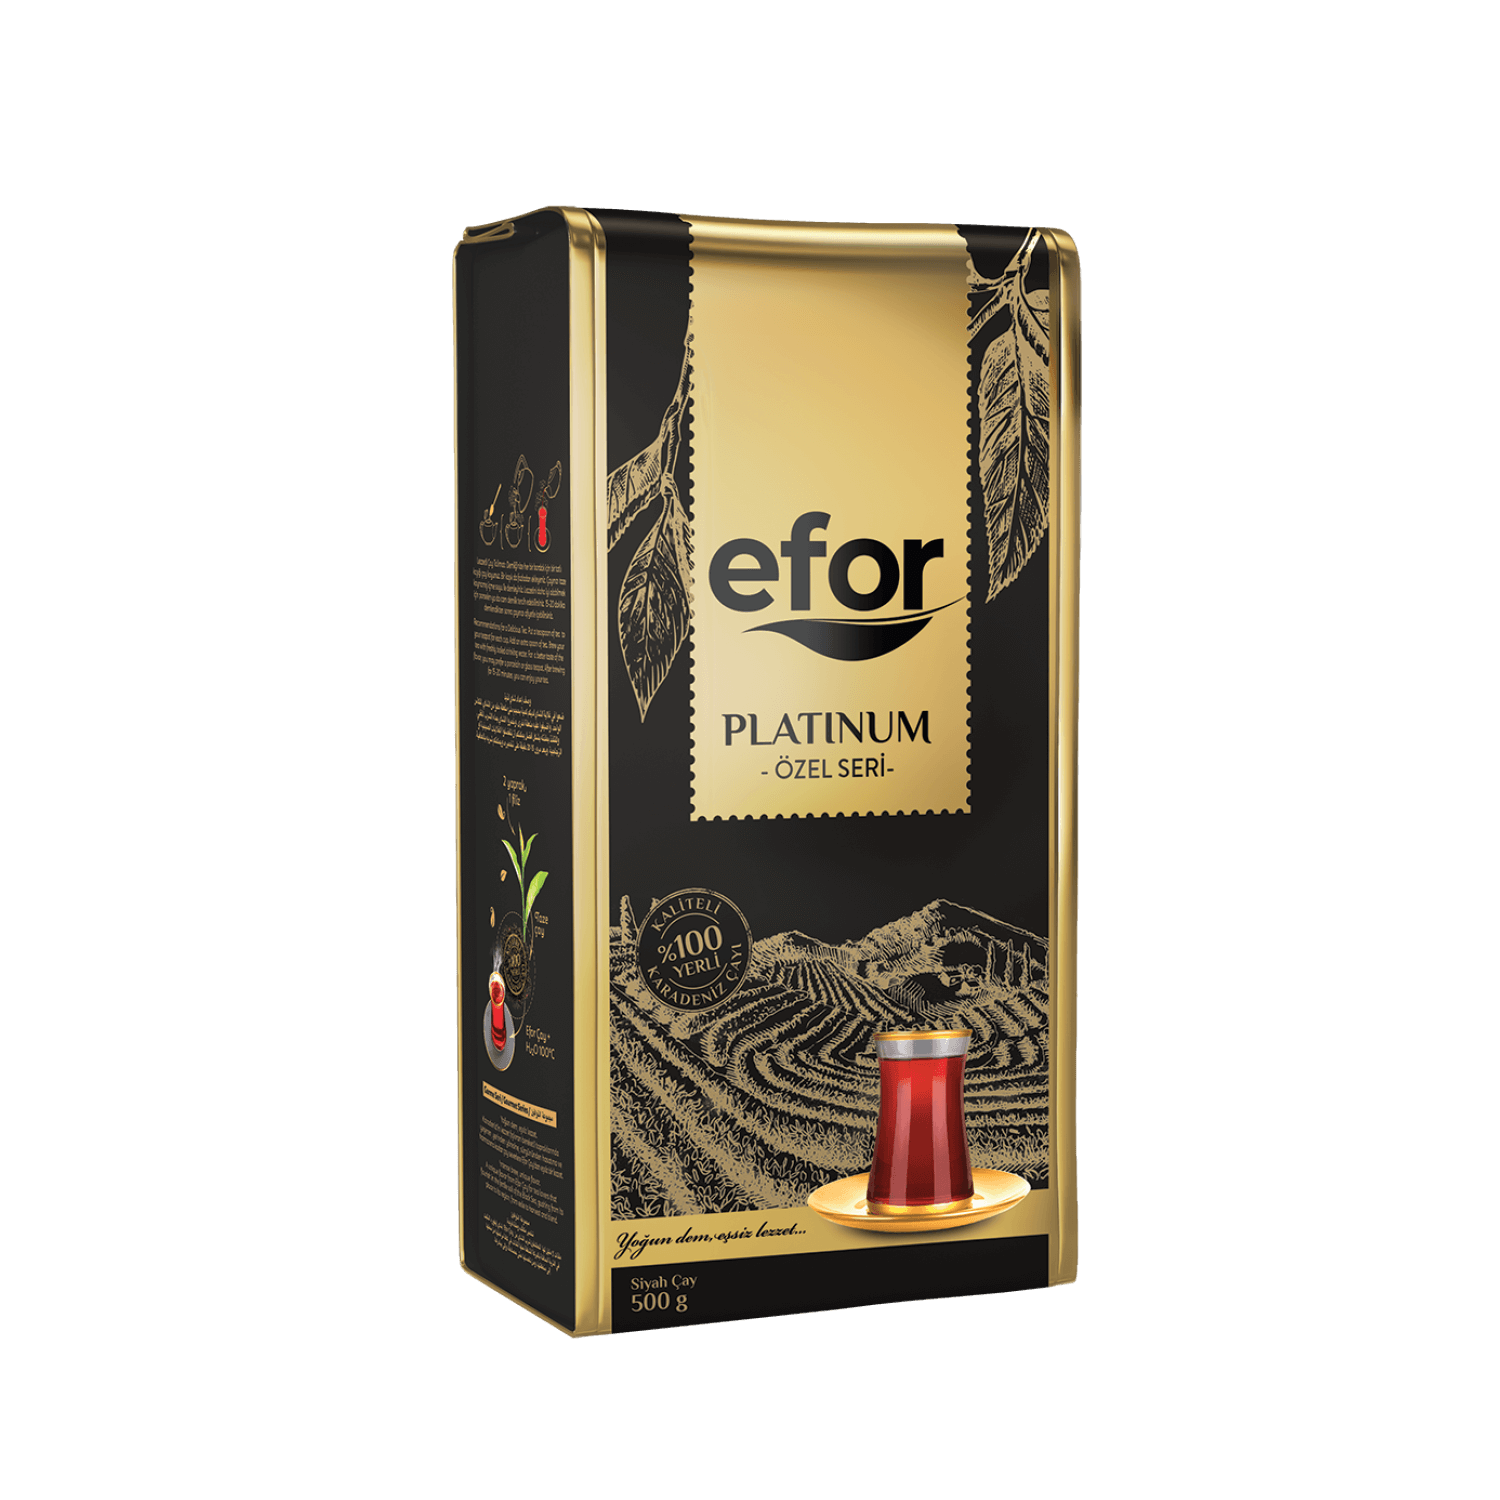 Efor Platinium Special Series Tea 500 g